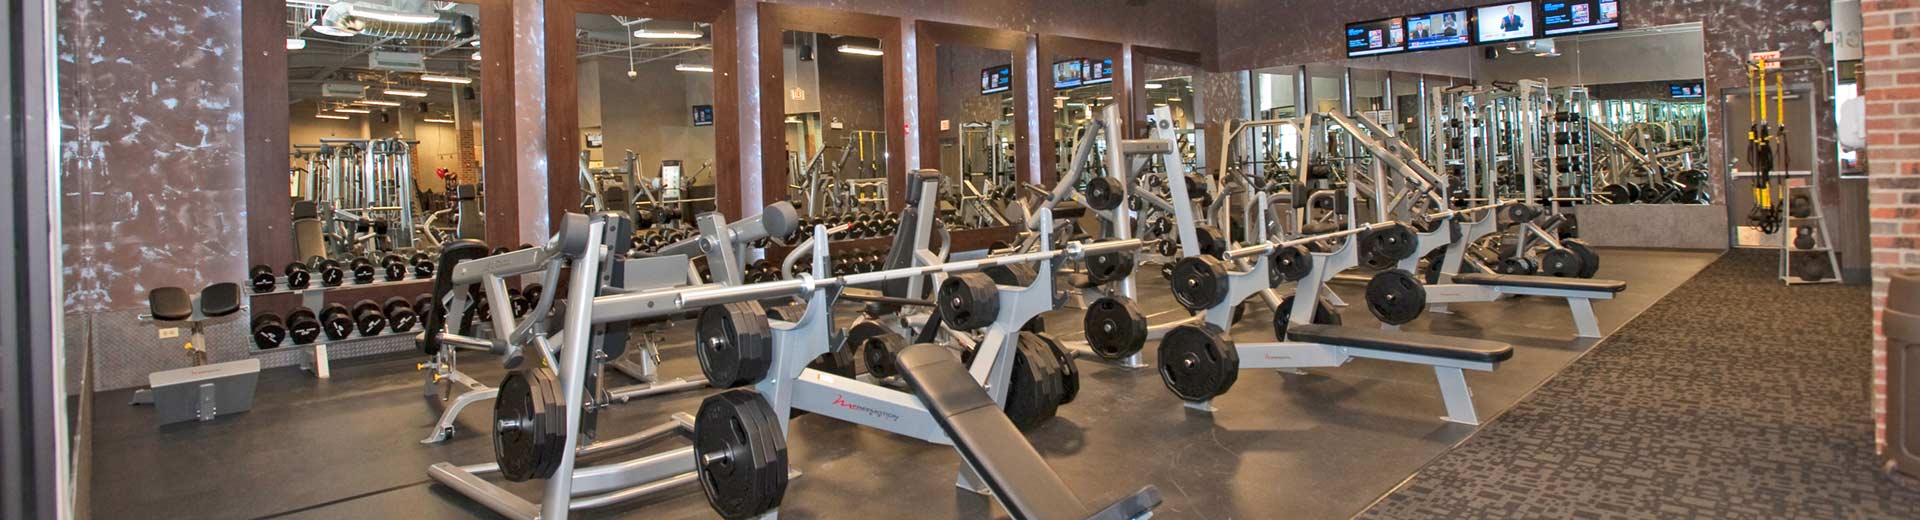 belmont & sawyer chicago gym amenities | xsport fitness